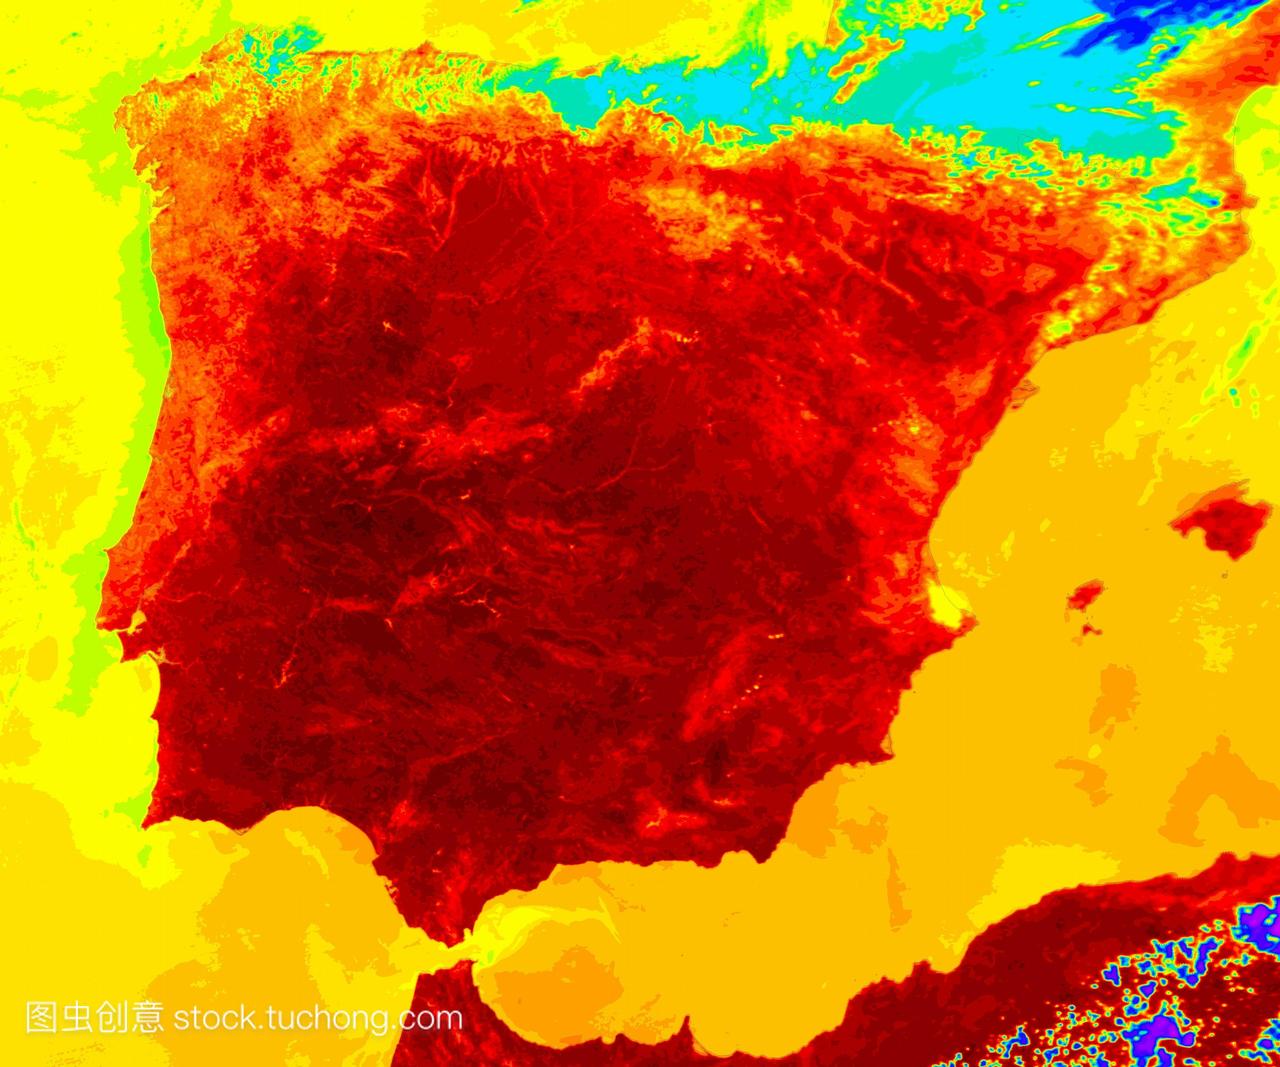 2004年夏天,受热浪影响的西班牙和葡萄牙大部